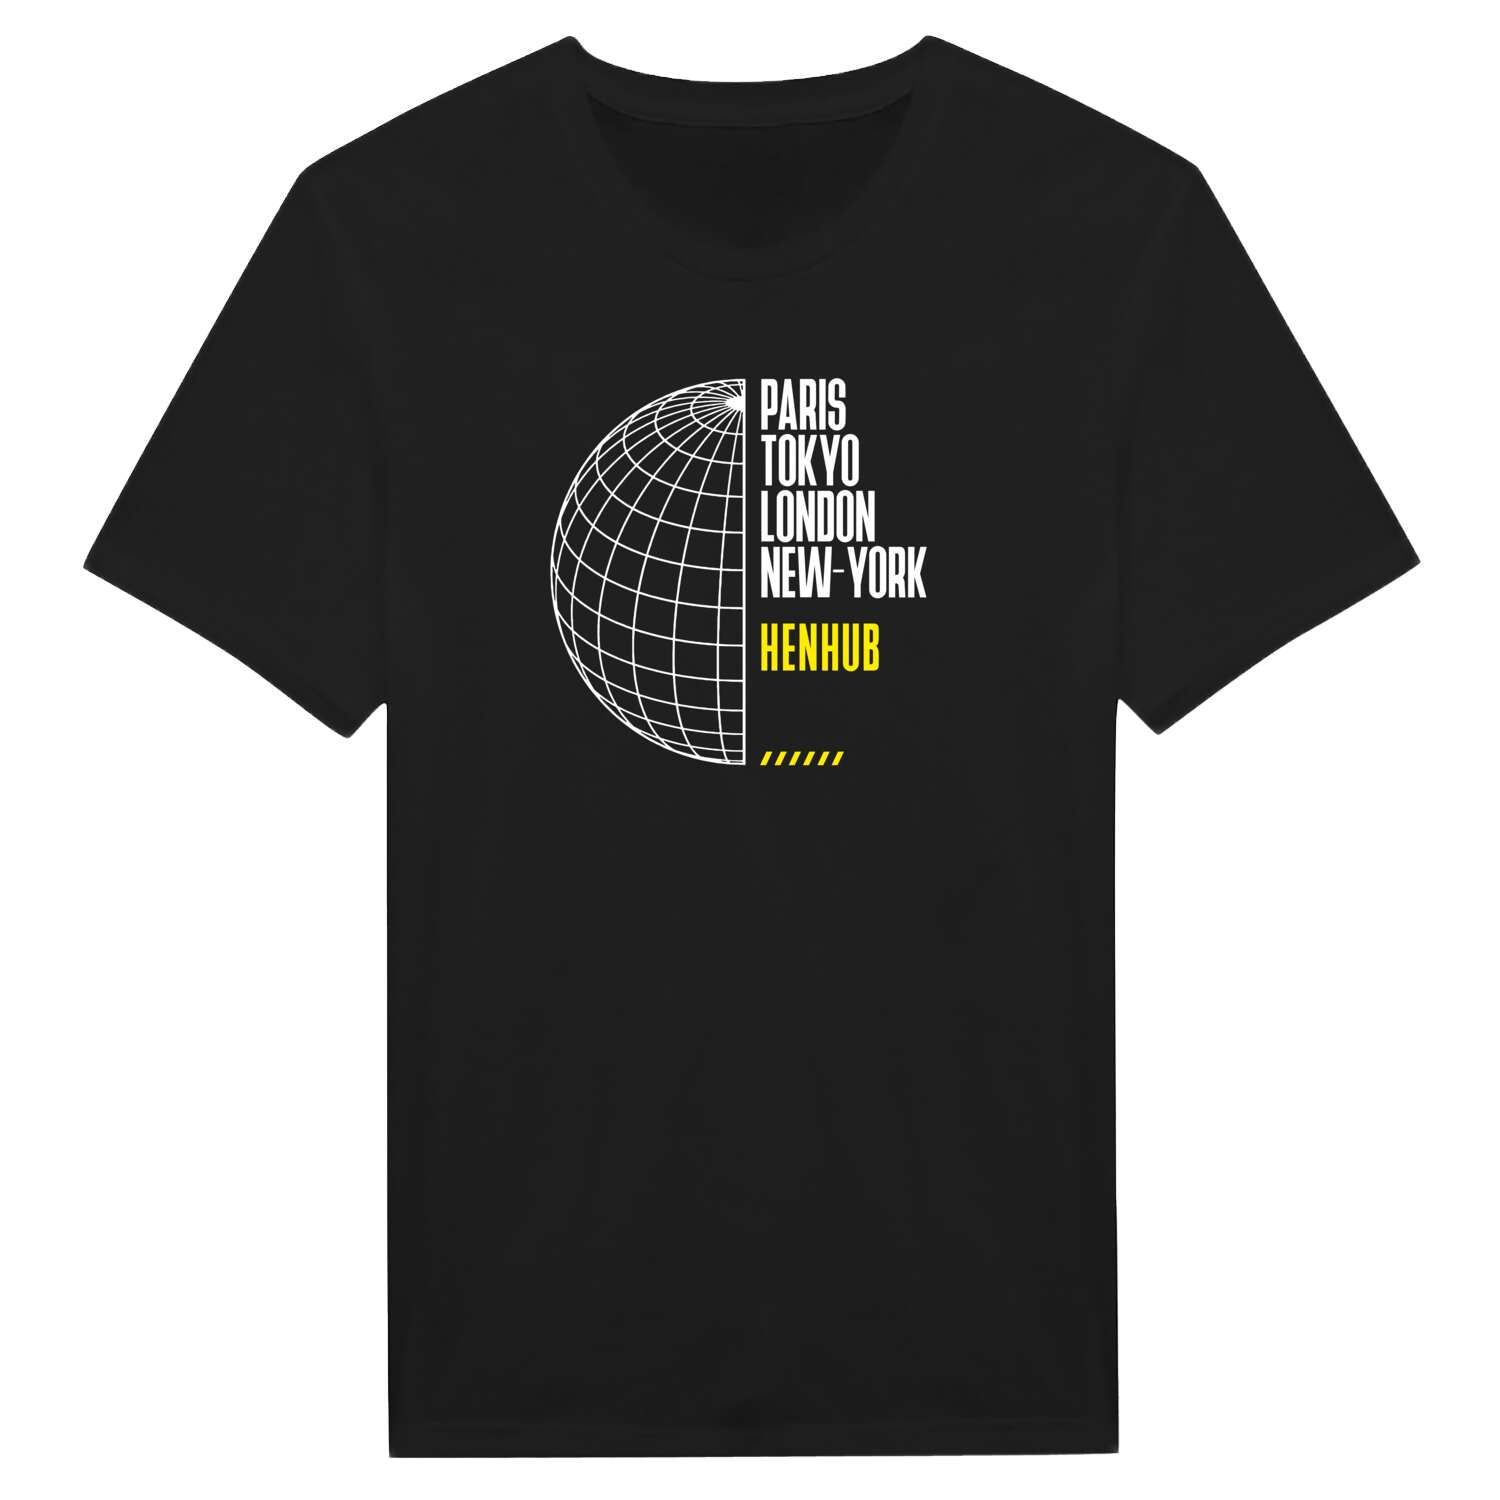 Henhub T-Shirt »Paris Tokyo London«